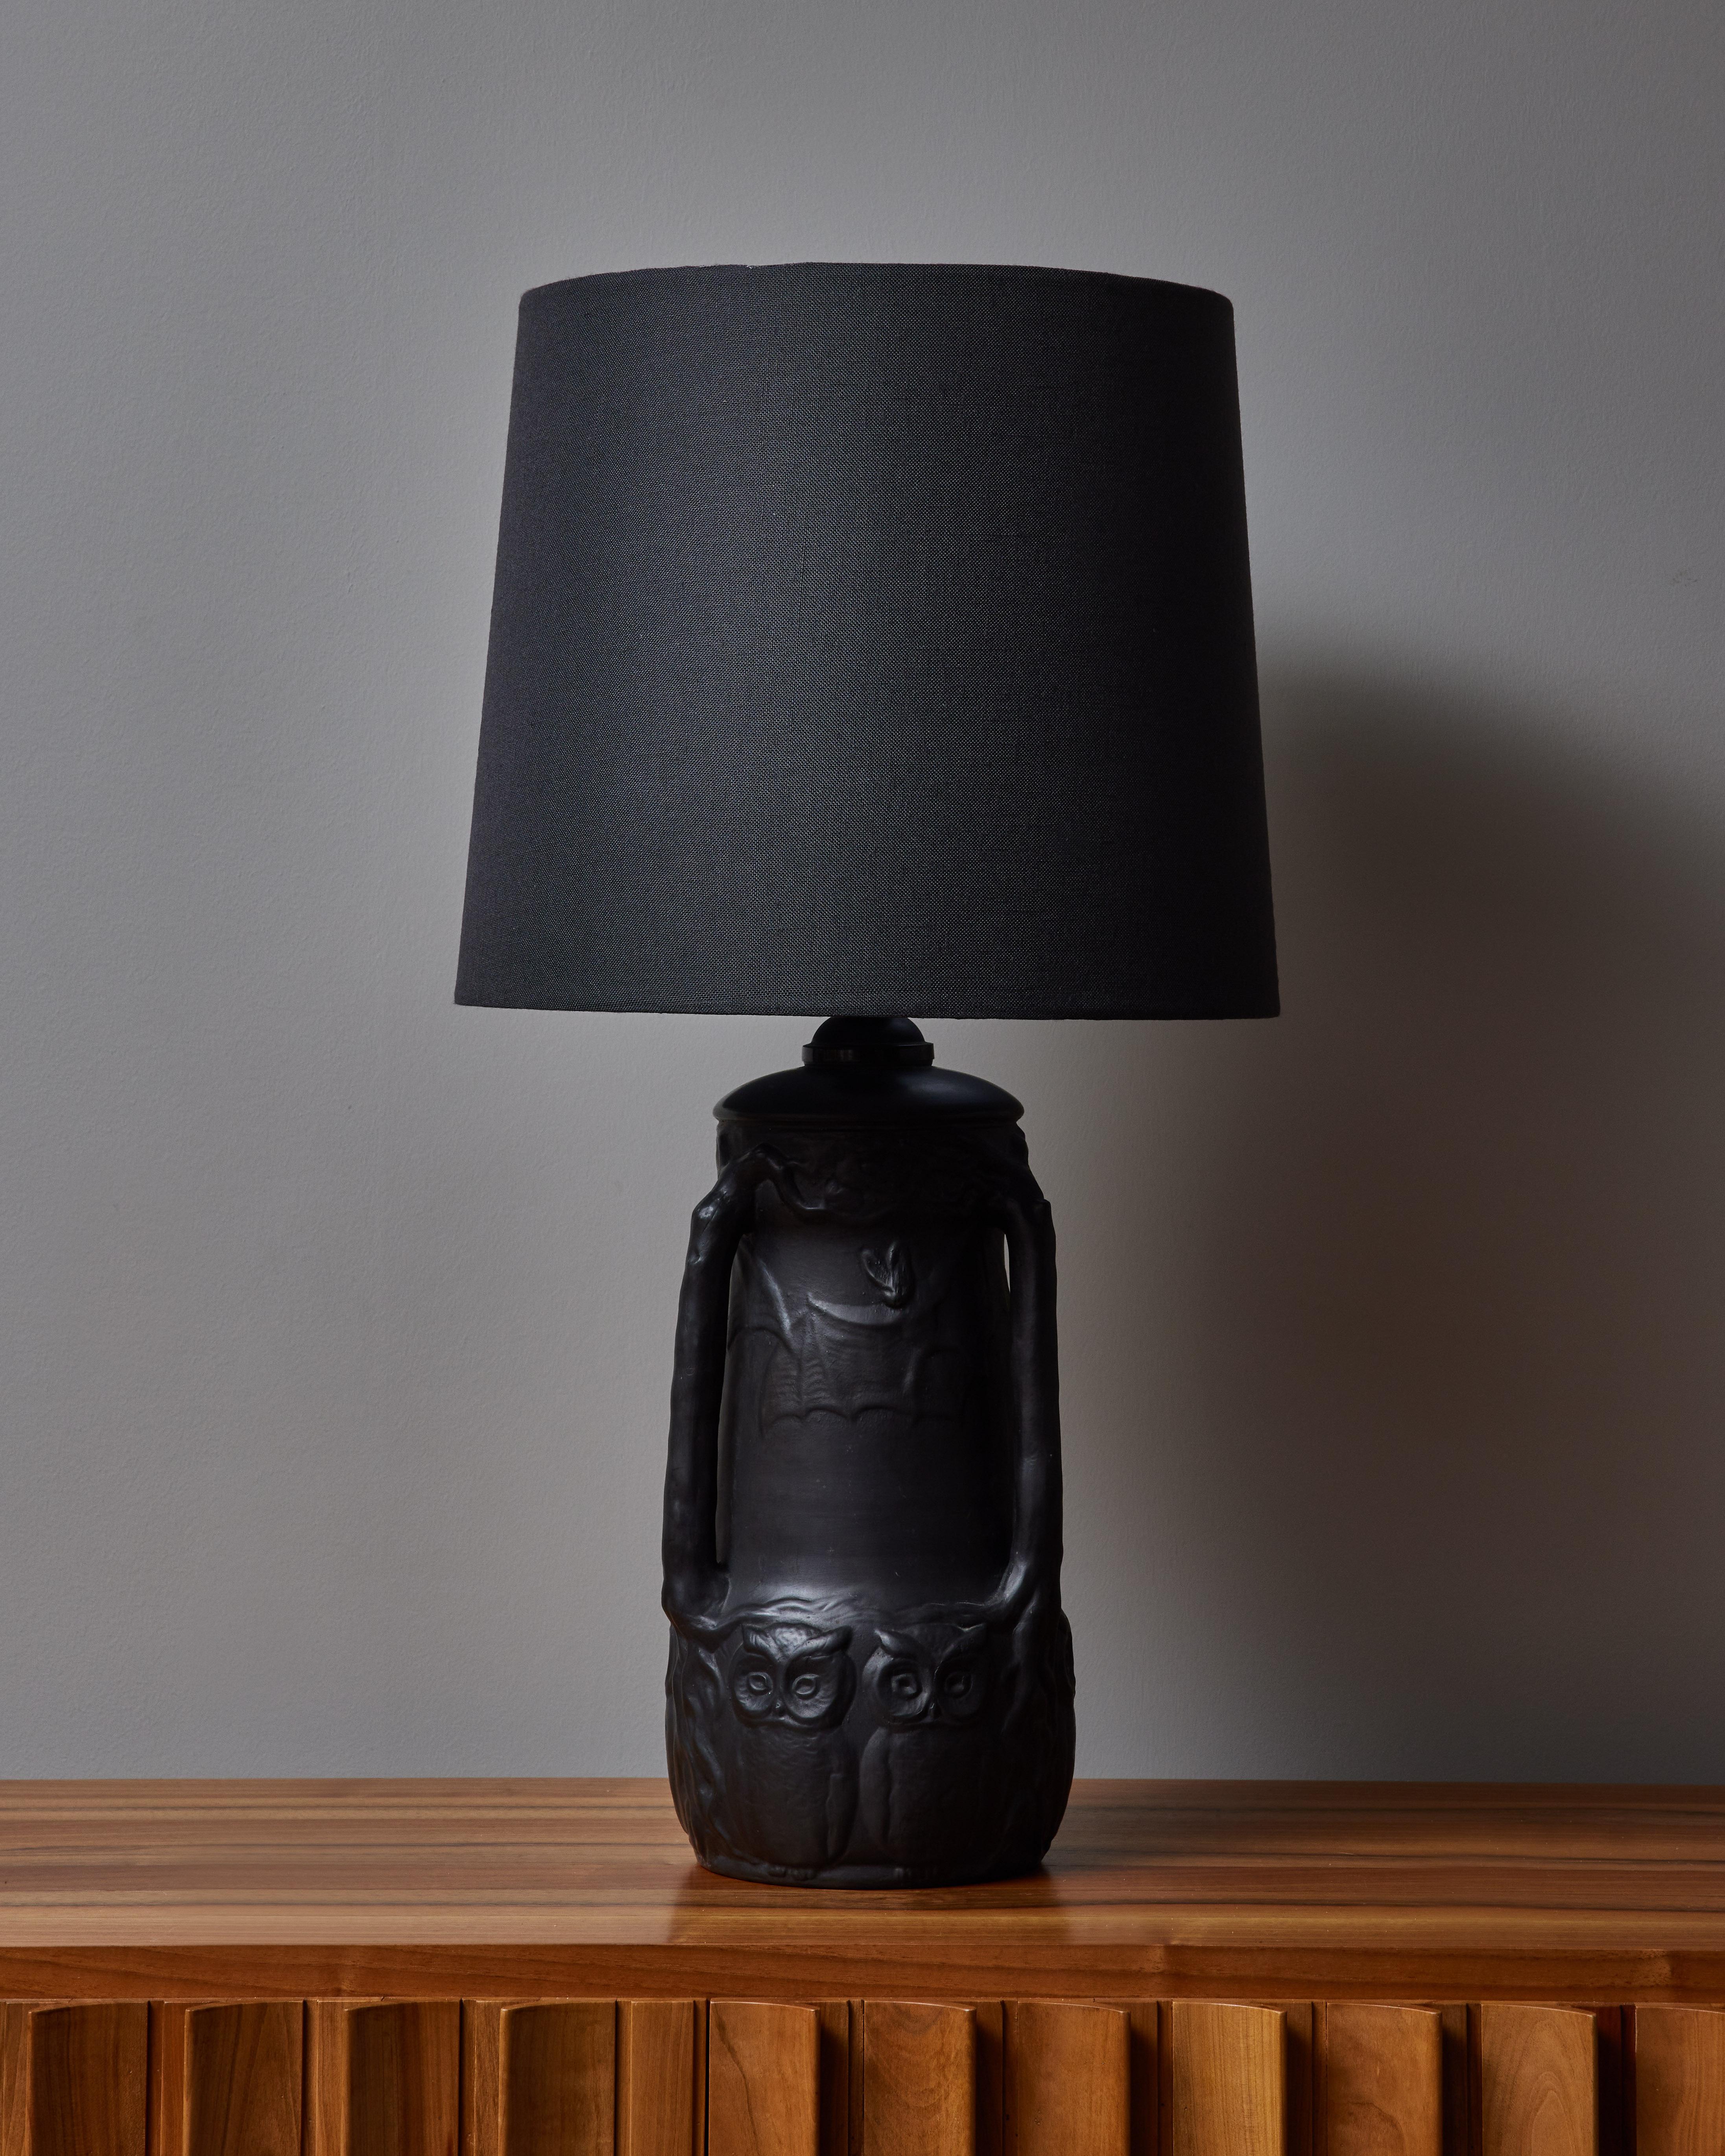 Lampe de table insolite réalisée par le céramiste danois Lauritz Adolph Hjorth. Cette lampe de table en céramique émaillée noire représente plusieurs animaux nocturnes. Signé en bas.

Lauritz Adolph Hjorth (1831-1912) est un céramiste danois dont